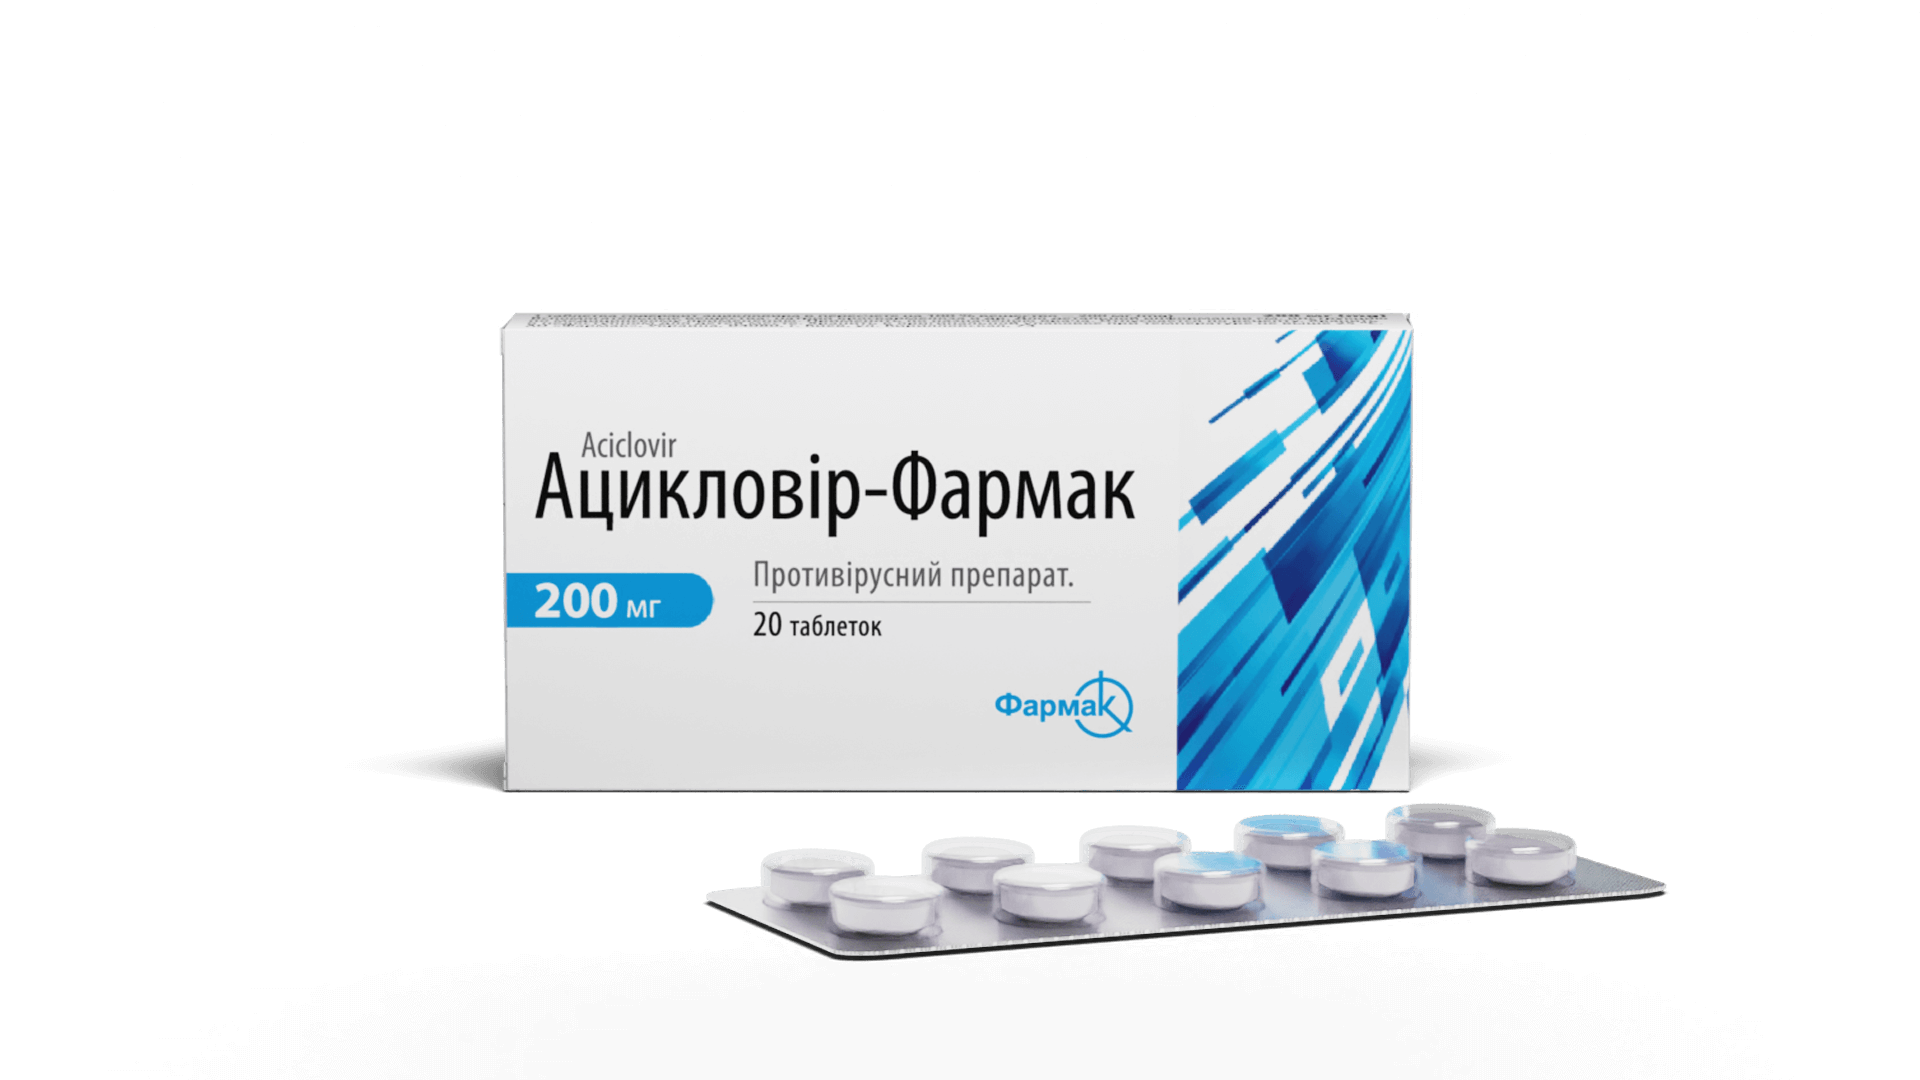 Ацикловир-Фармак (2)